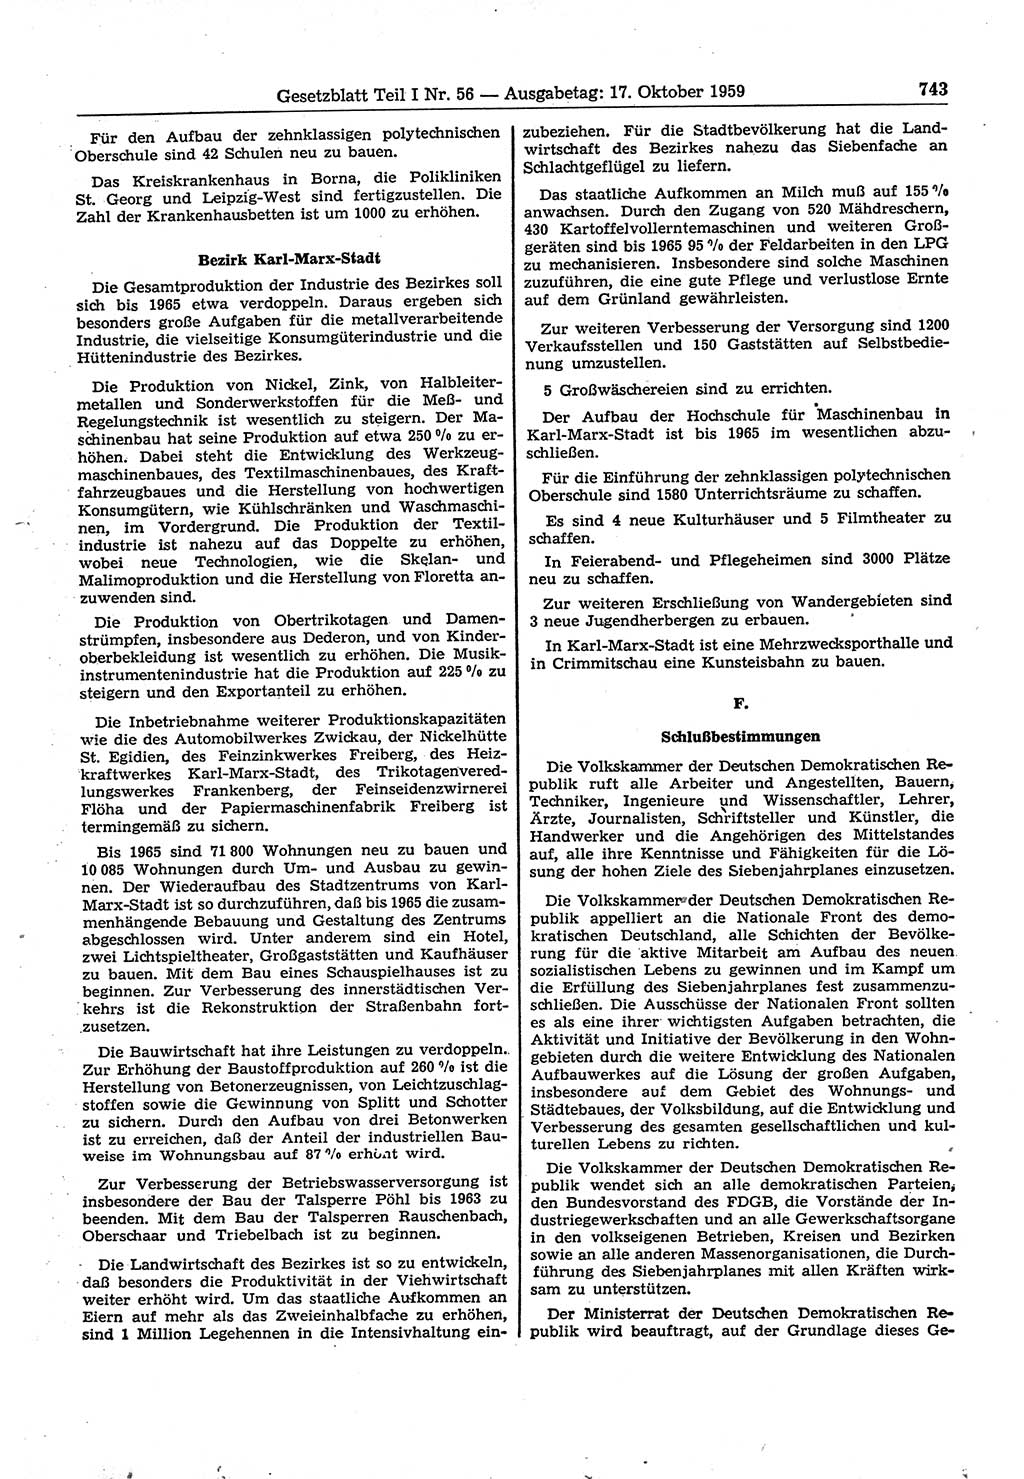 Gesetzblatt (GBl.) der Deutschen Demokratischen Republik (DDR) Teil Ⅰ 1959, Seite 743 (GBl. DDR Ⅰ 1959, S. 743)